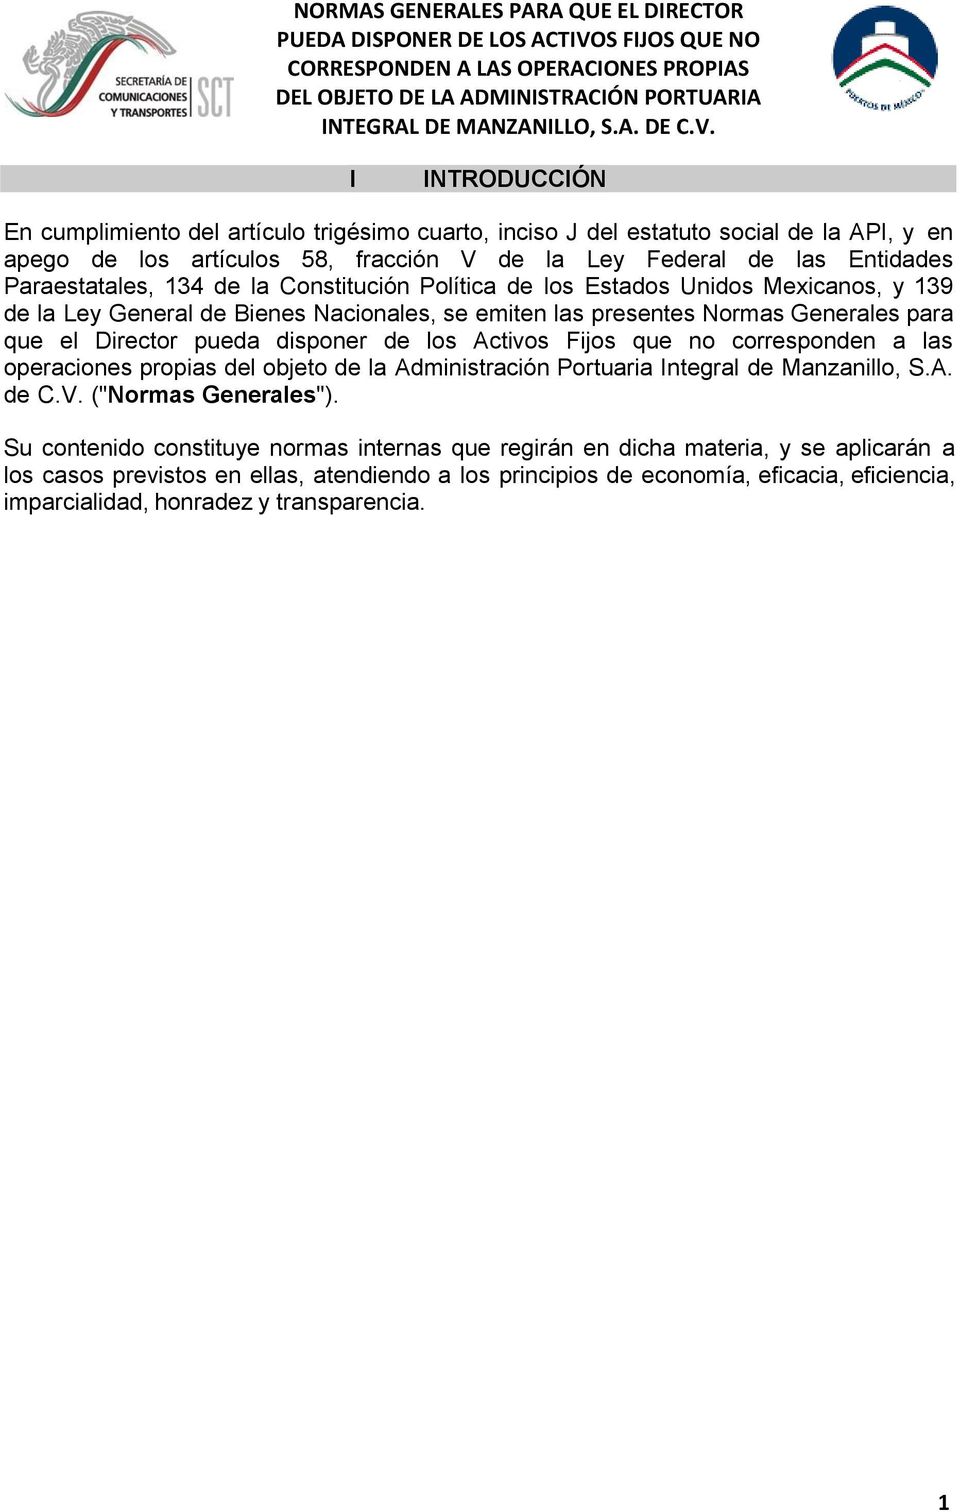 disponer de los Activos Fijos que no corresponden a las operaciones propias del objeto de la Administración Portuaria Integral de Manzanillo, S.A. de C.V. ("Normas Generales").